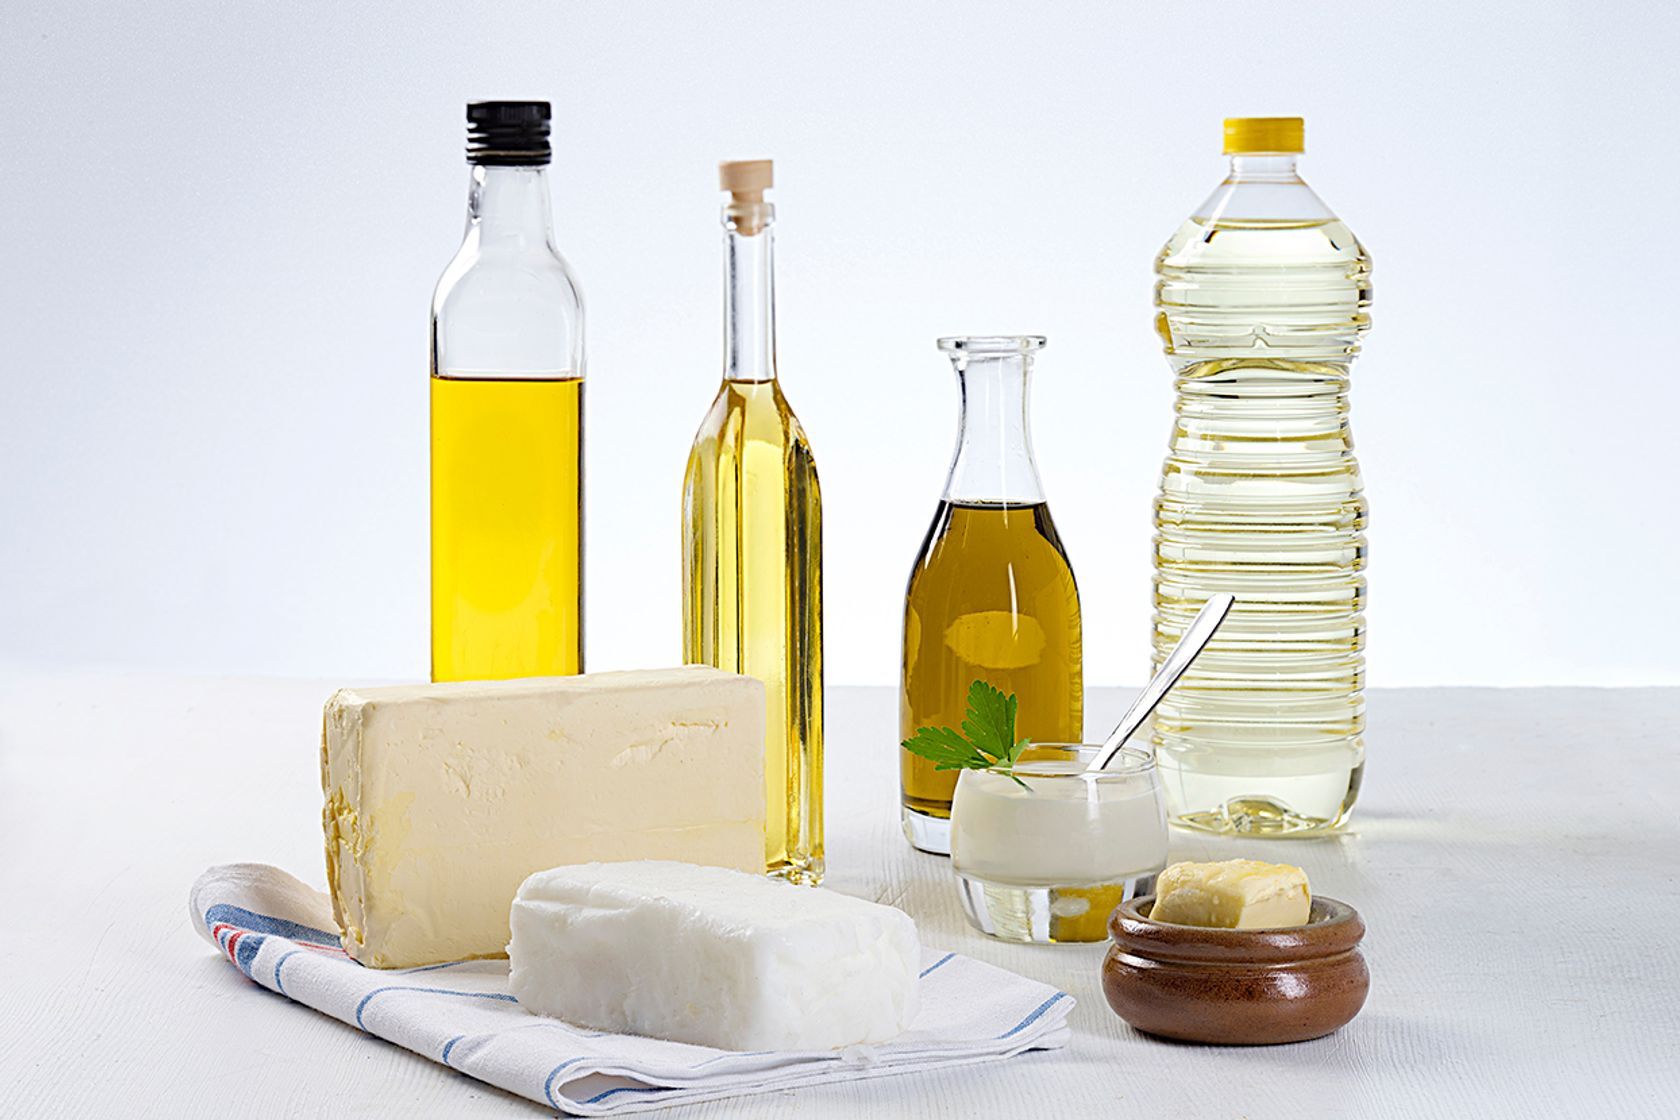 Kokosöl, Margarine, je eine Flasche Olivenöl, Rapsöl, Sonnenblumenöl stehen auf einer Fläche.